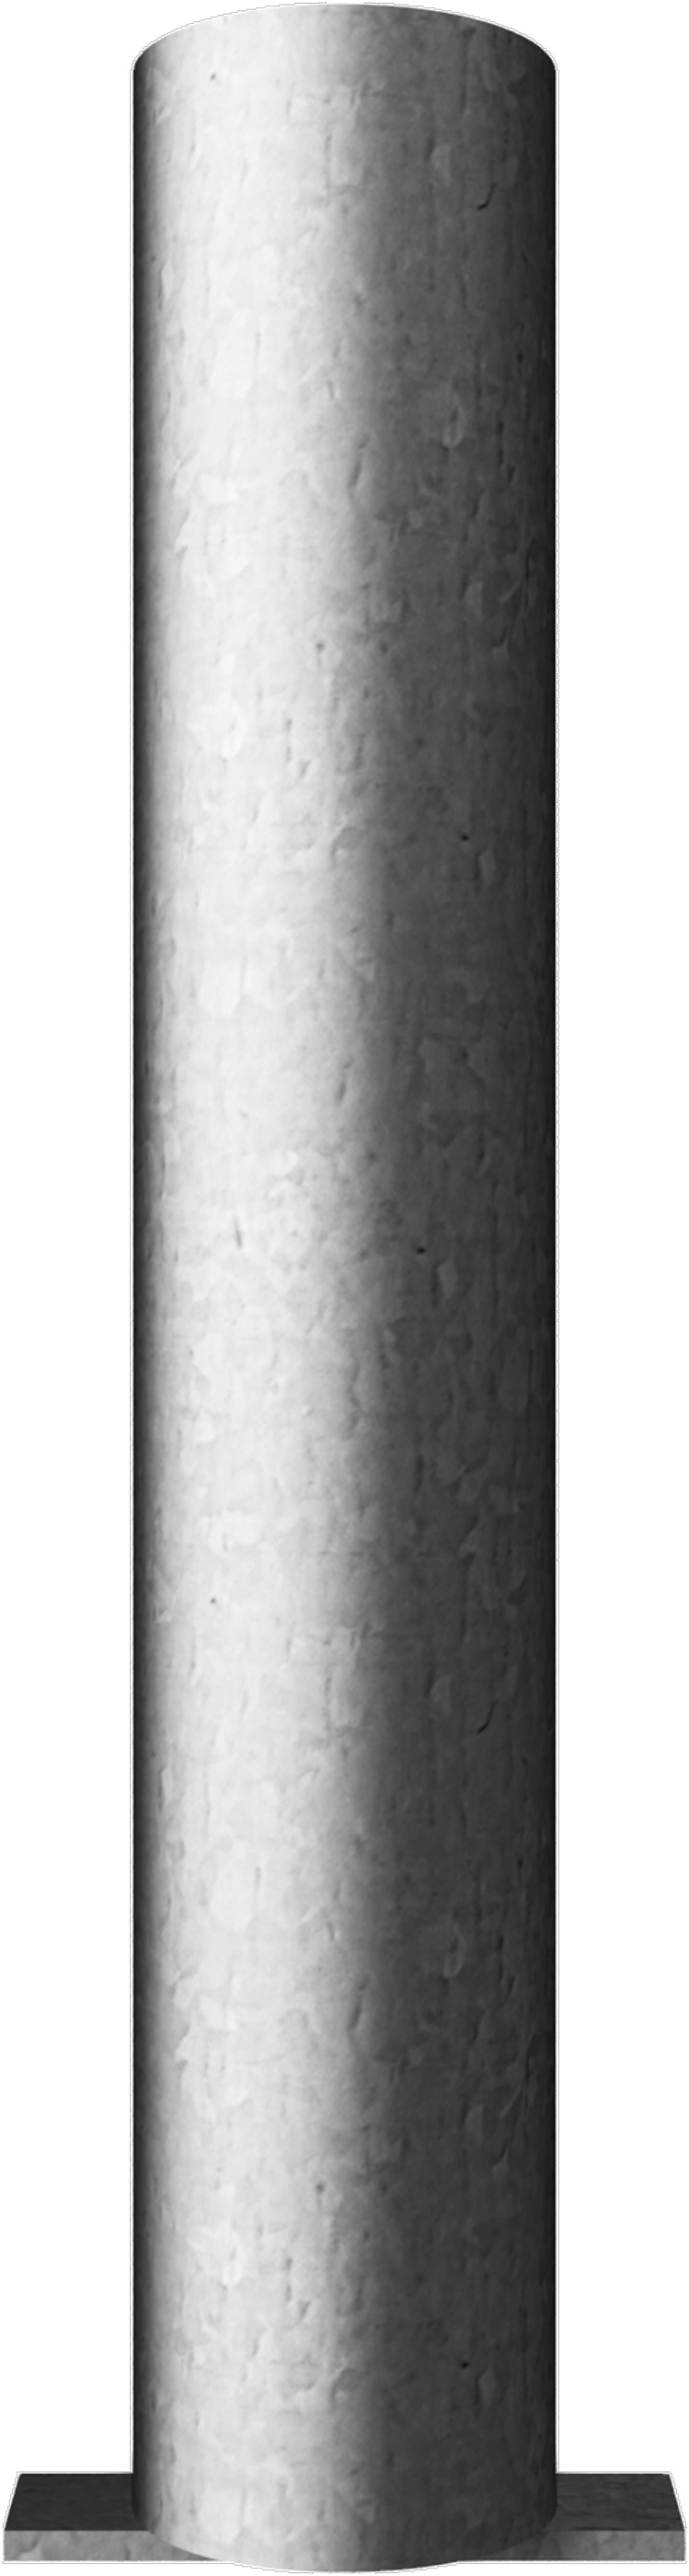 Schake Bodenhülse für Ø 60 mm Pfosten ohne Verschluss